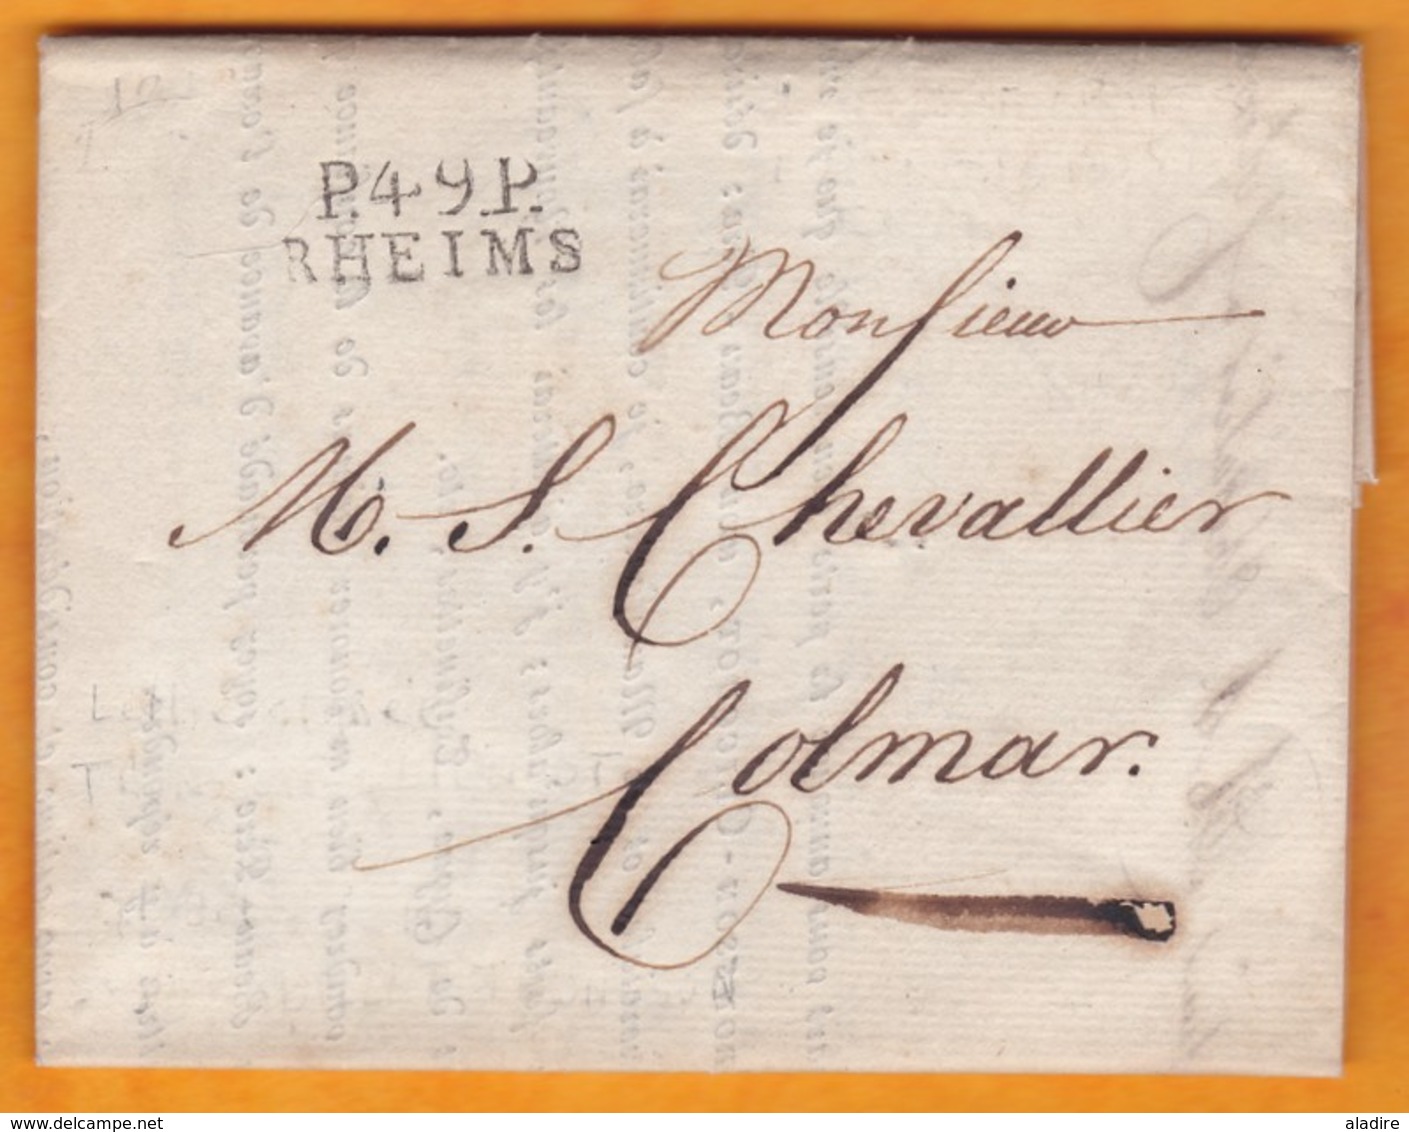 1812 - Marque Postale P49P RHEIMS, Reims, Marne Sur LAC Signée Veuve Cliquot Vers Colmar, Haut Rhin - 1792-1815: Départements Conquis